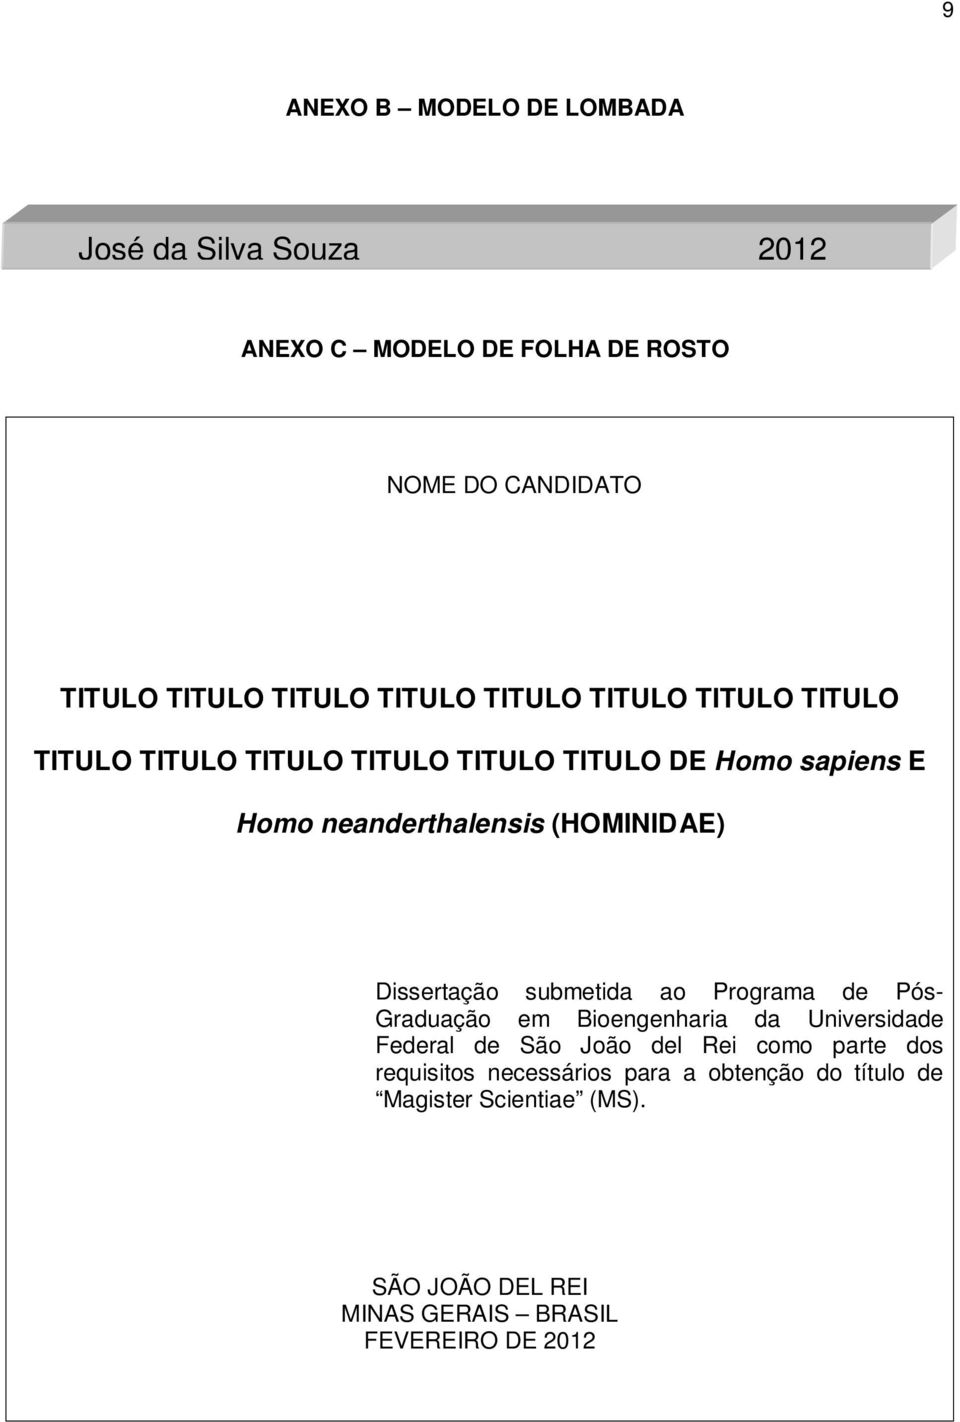 Dissertação submetida ao Programa de Pós- Graduação em Bioengenharia da Universidade Federal de São João del Rei como parte dos